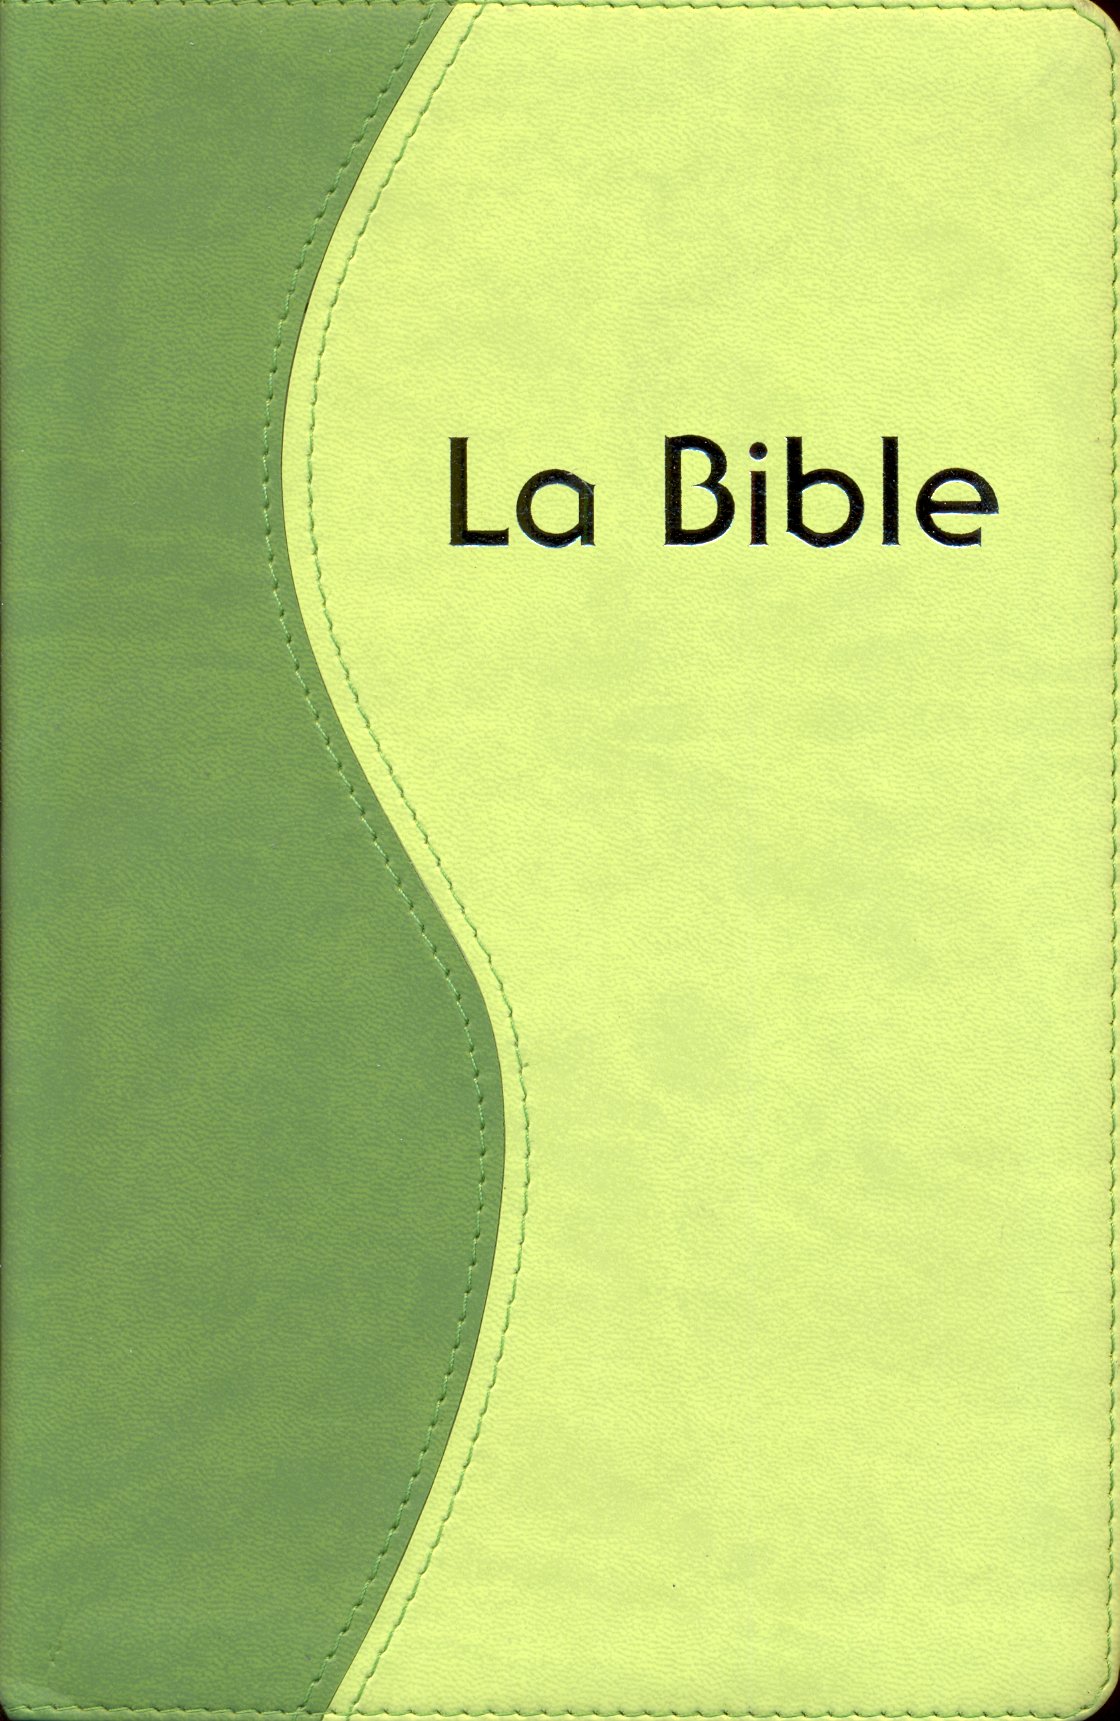 Bible Semeur 2000, de poche, duo vert anis - couverture souple, tranche or